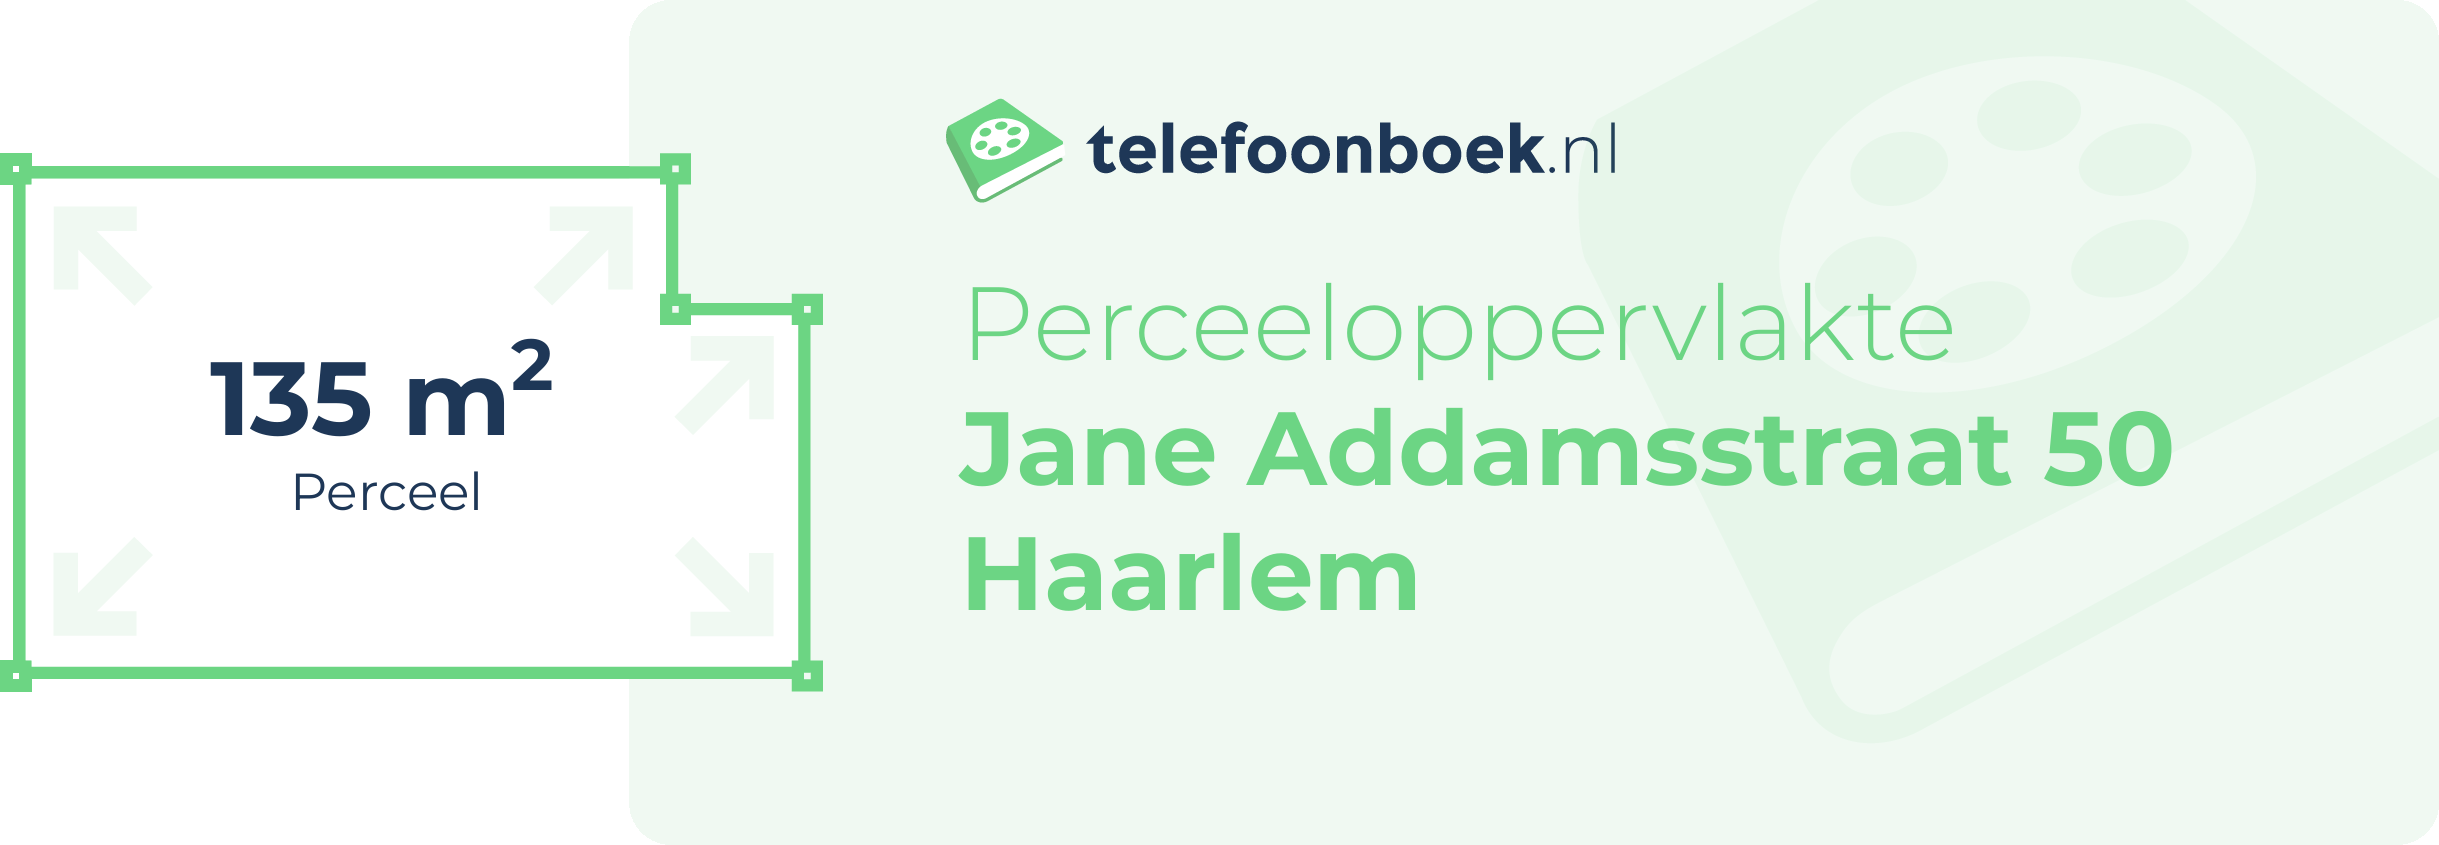 Perceeloppervlakte Jane Addamsstraat 50 Haarlem